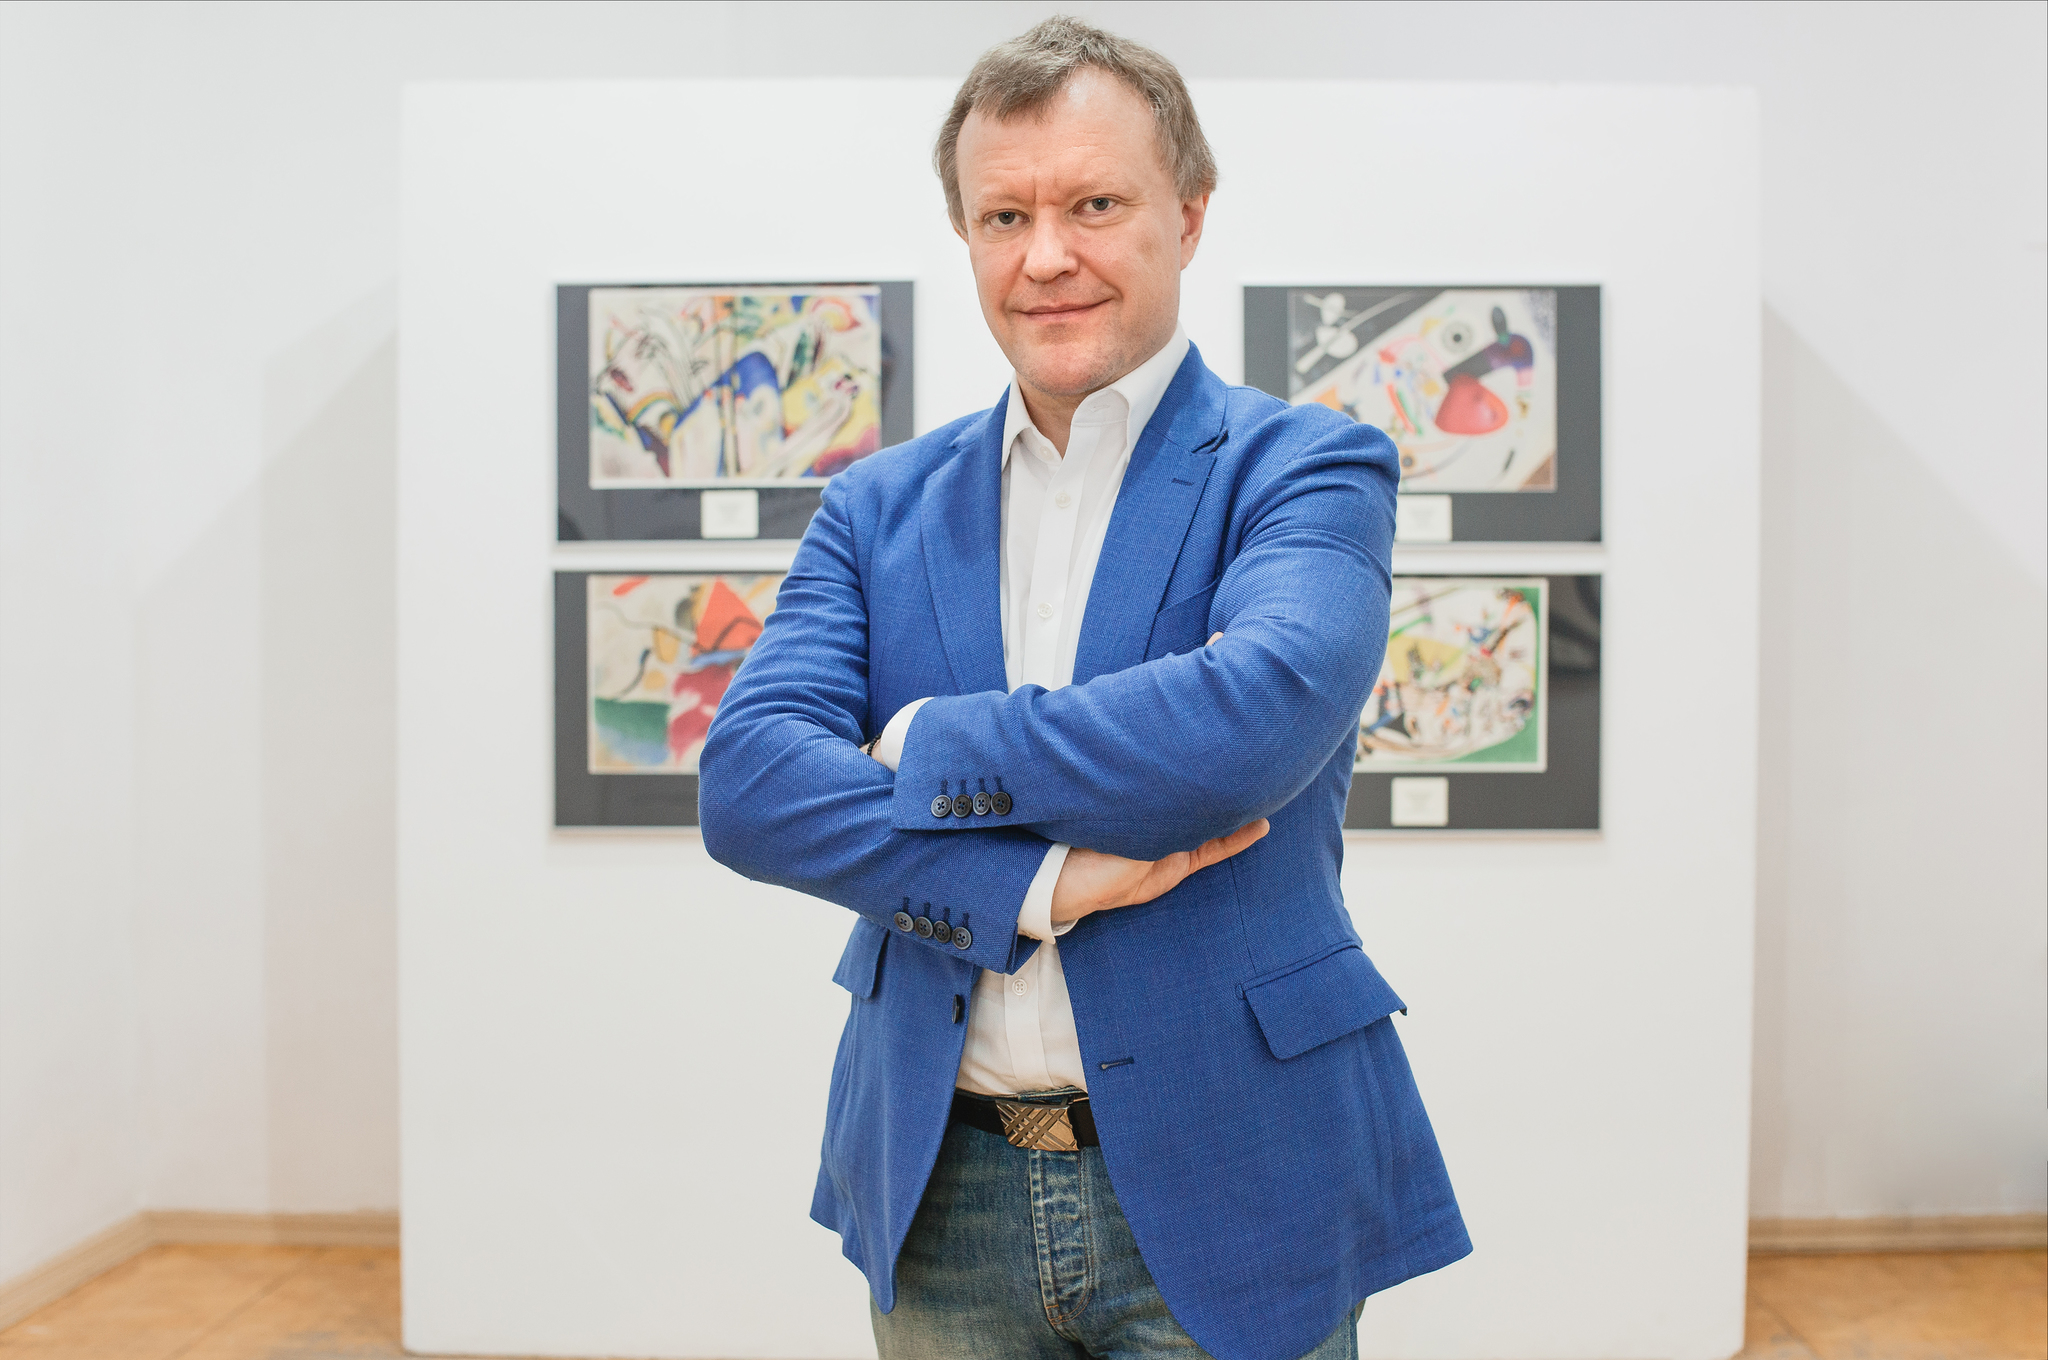 Афиша Ижевска — Выставка Кандинского. Как слышится музыка в картинах?